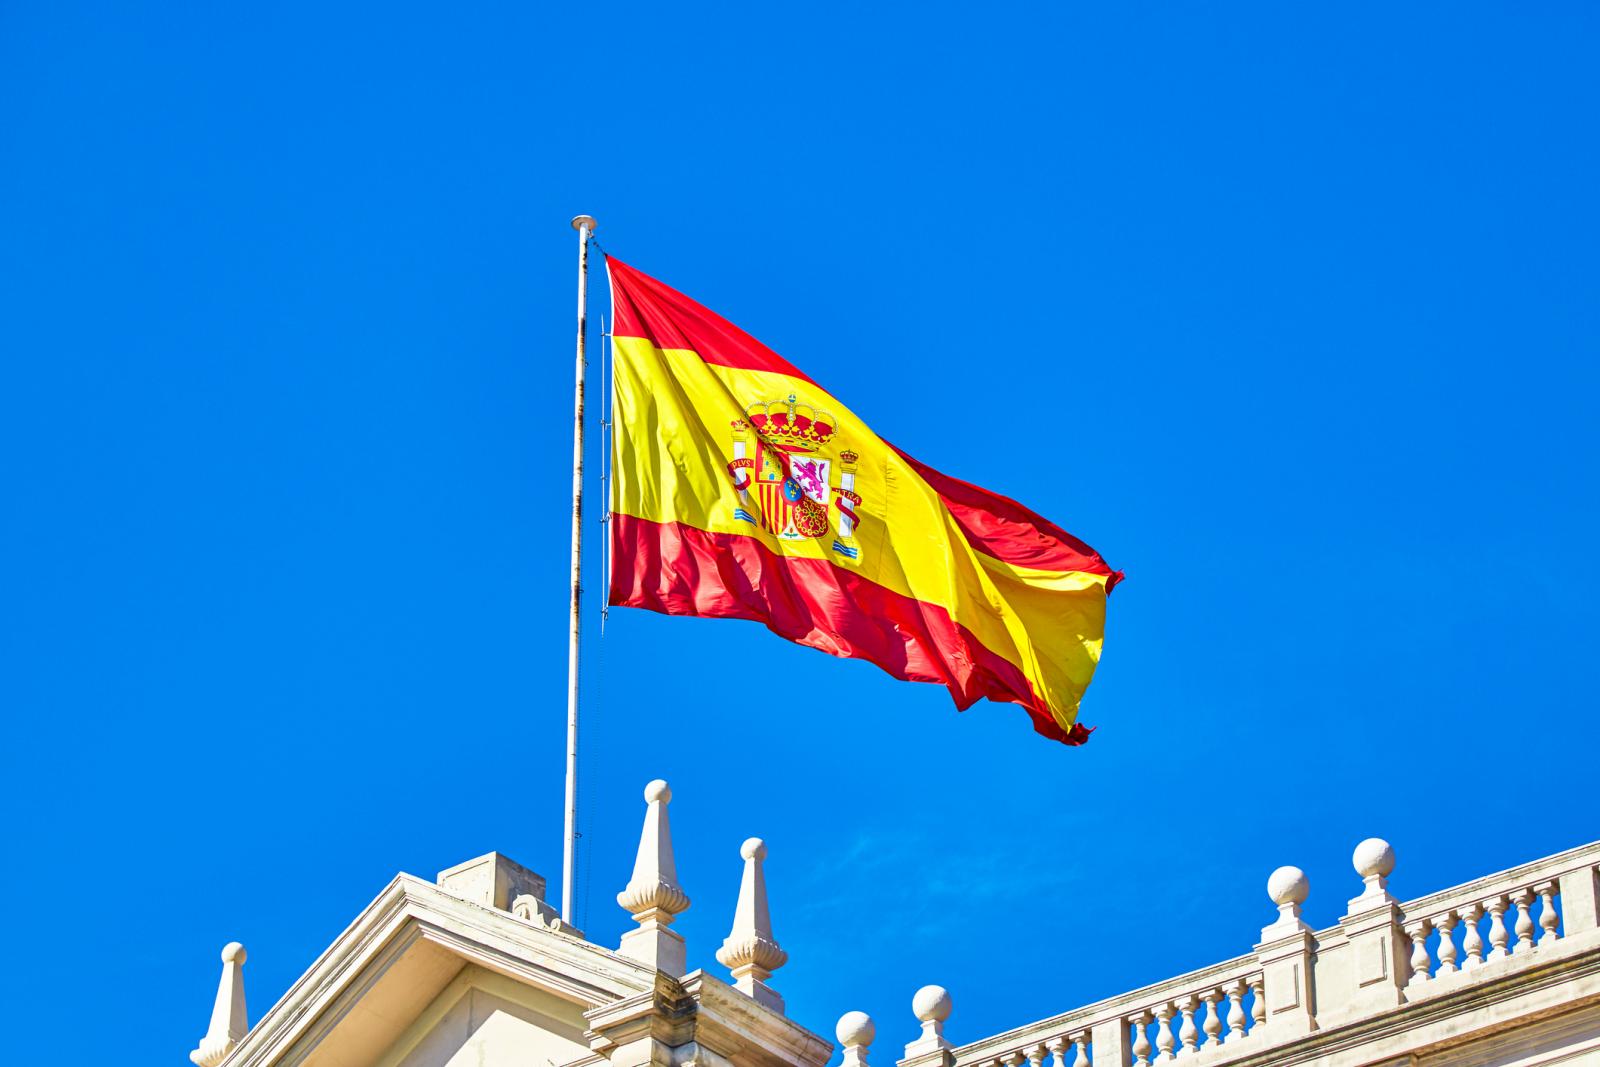 drapeau espagnol bandes rouges et jaunes flottant dans le vent et le ciel bleu